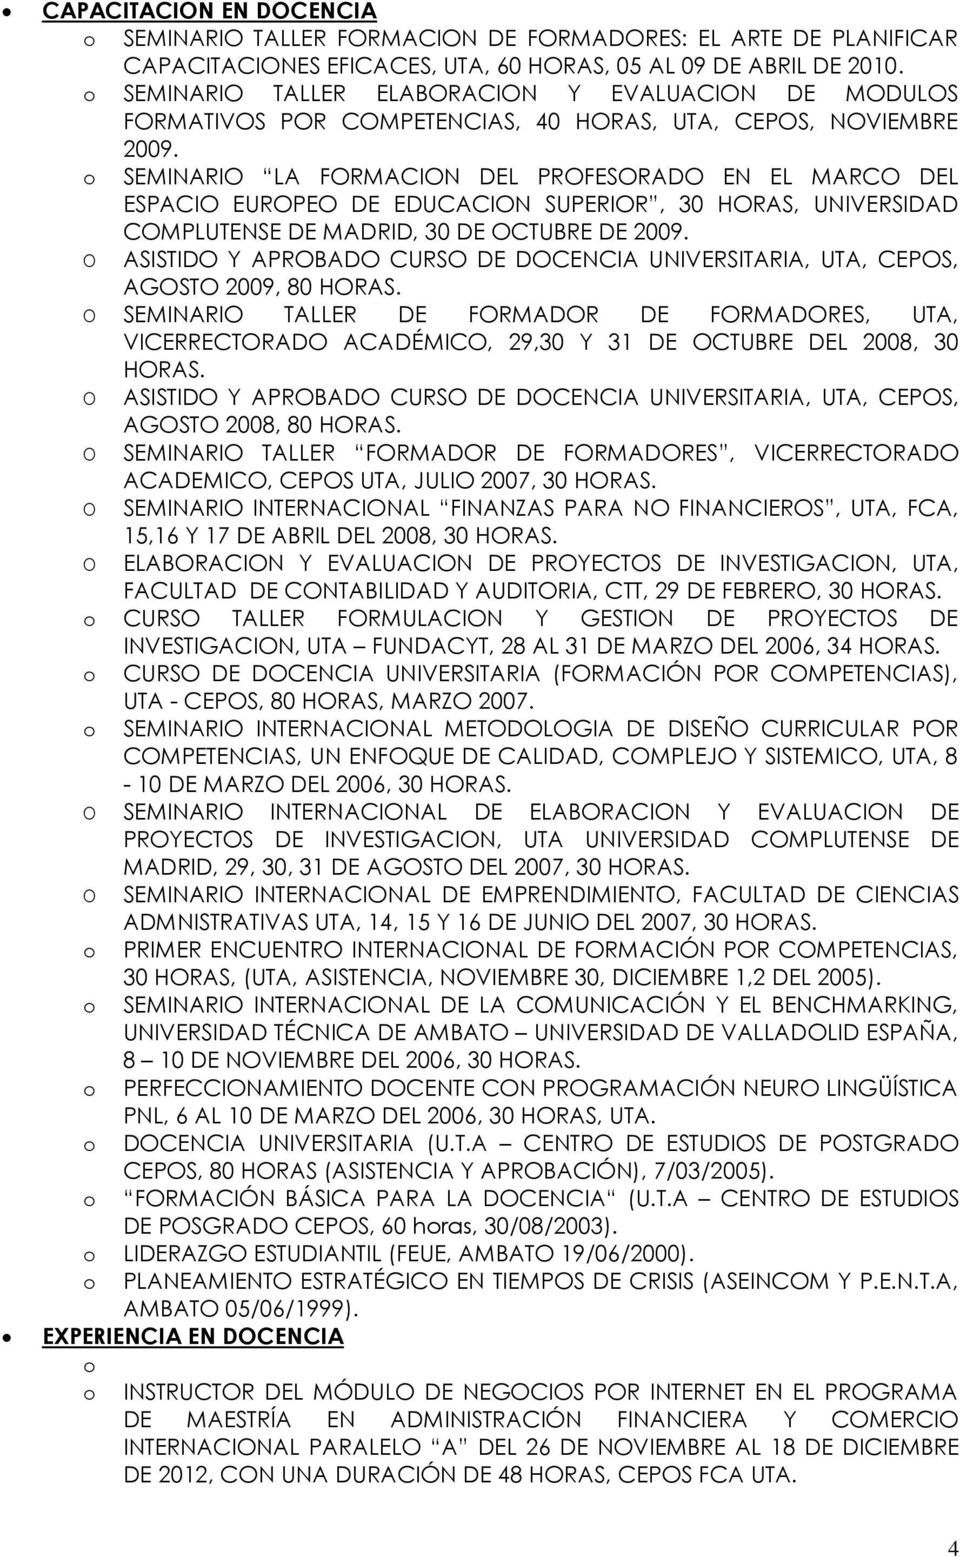 O SEMINARIO LA FORMACION DEL PROFESORADO EN EL MARCO DEL ESPACIO EUROPEO DE EDUCACION SUPERIOR, 30 HORAS, UNIVERSIDAD COMPLUTENSE DE MADRID, 30 DE OCTUBRE DE 2009.